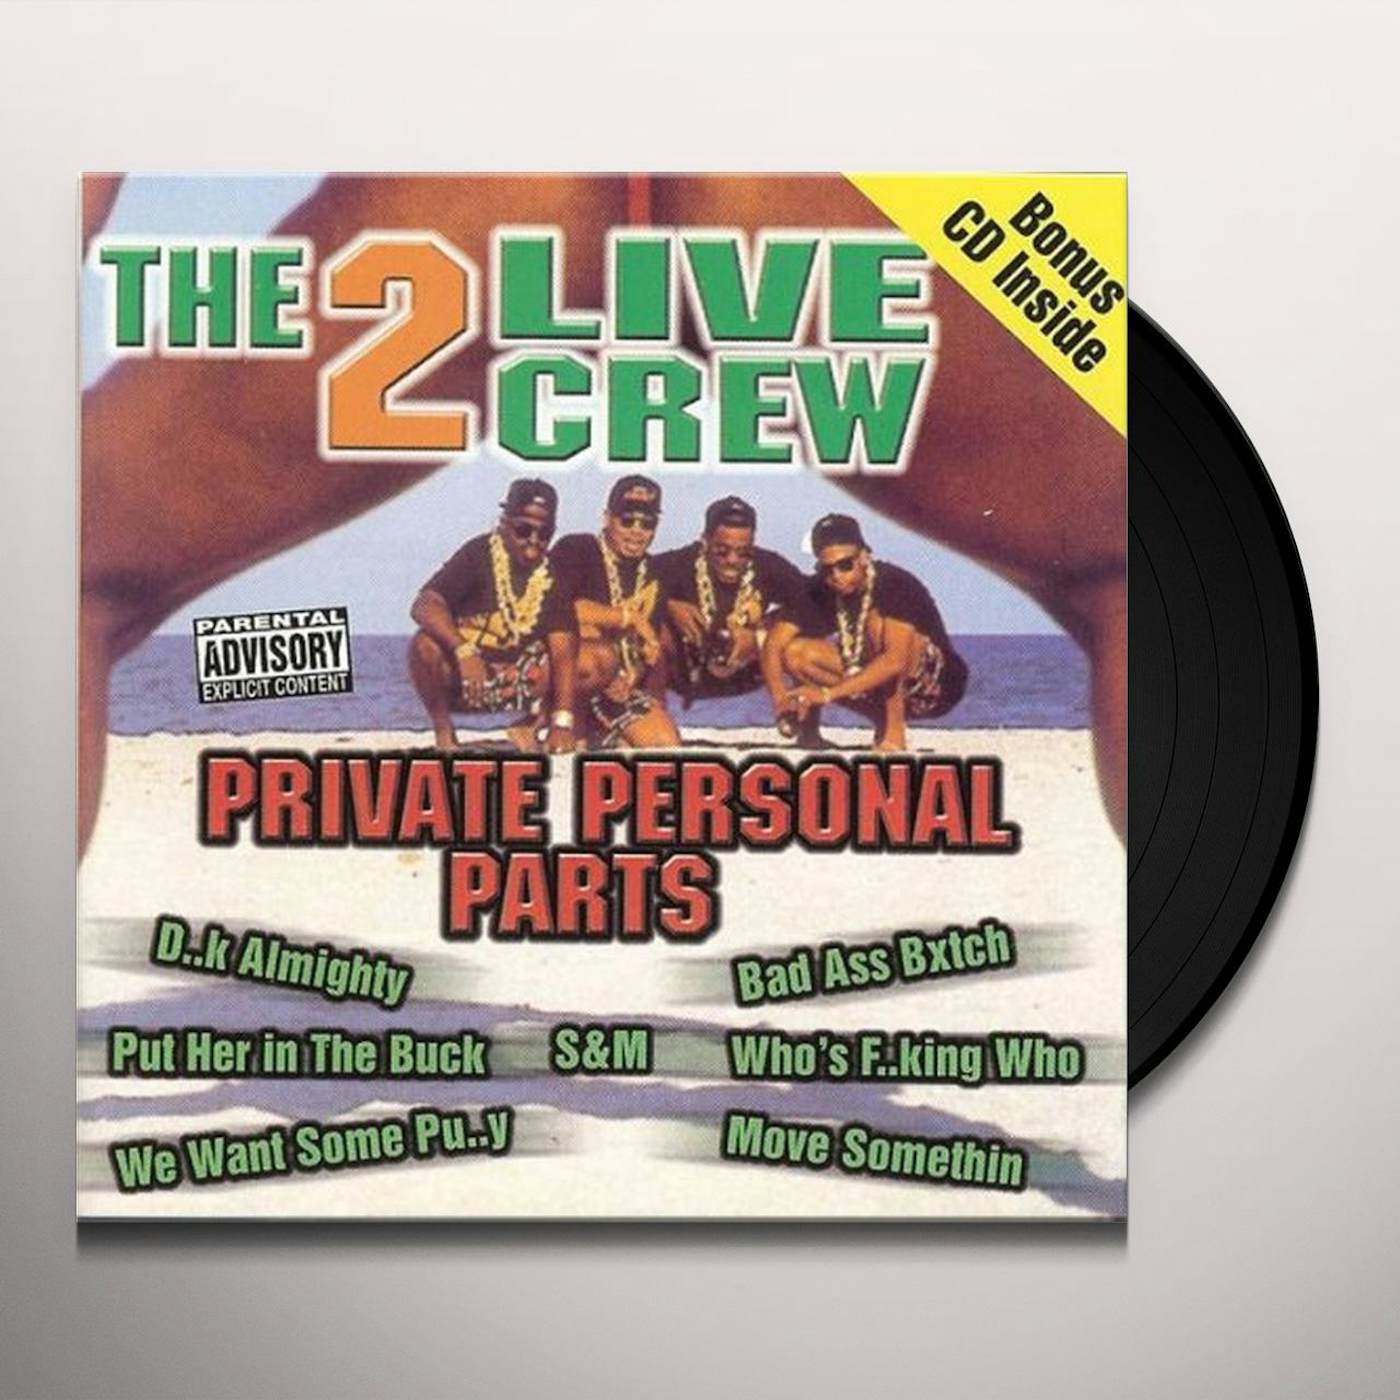 2 LIVE CREW PRIVATE PERSONAL PARTS Vinyl Record